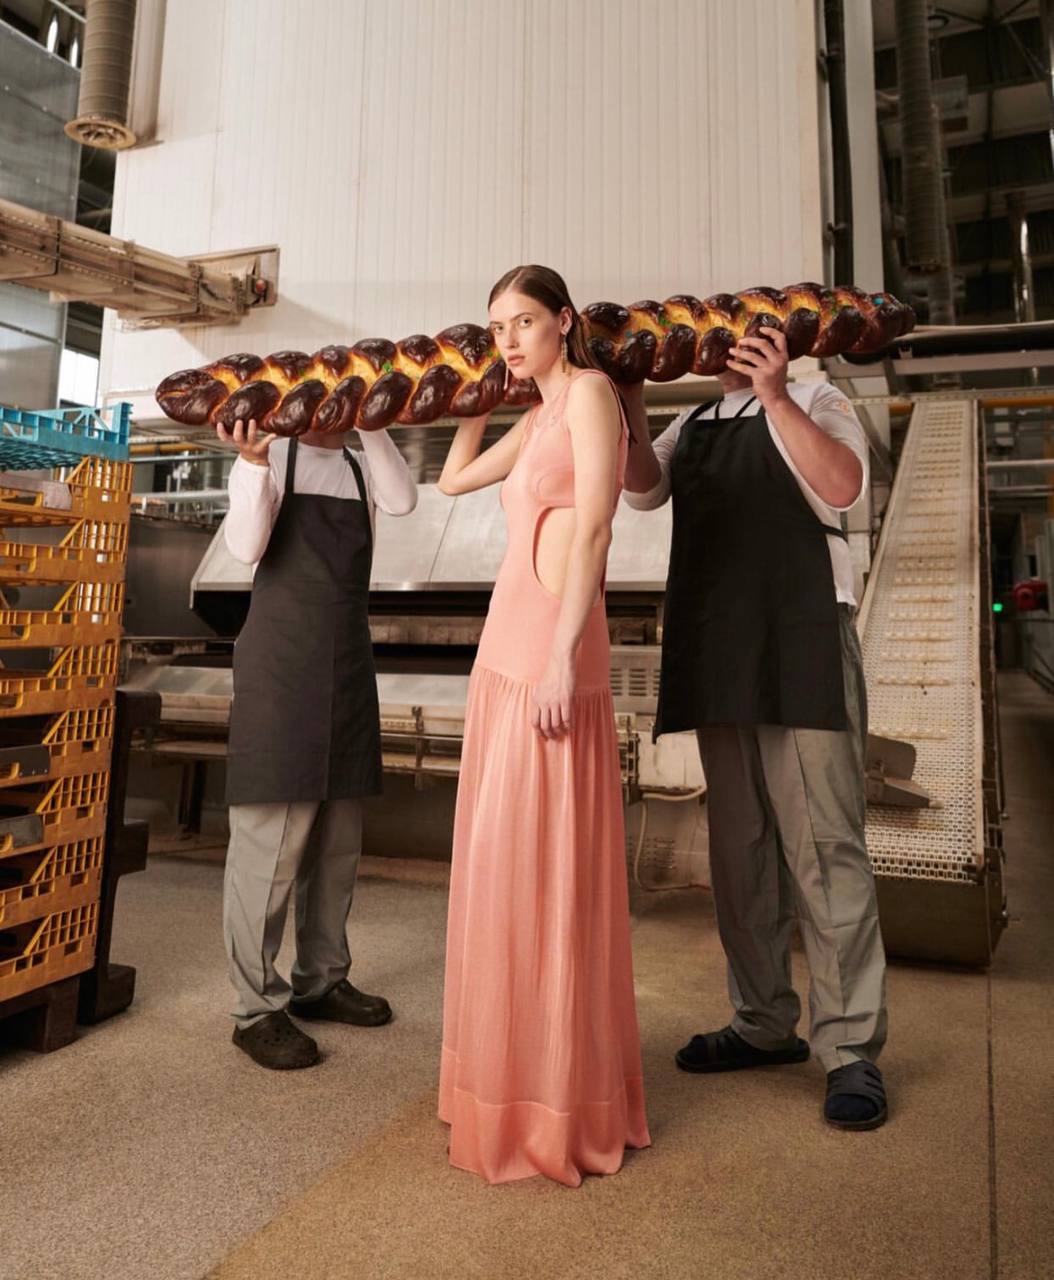 Ціна хліба: бренд BEVZA представив концептуальну зйомку у пекарні